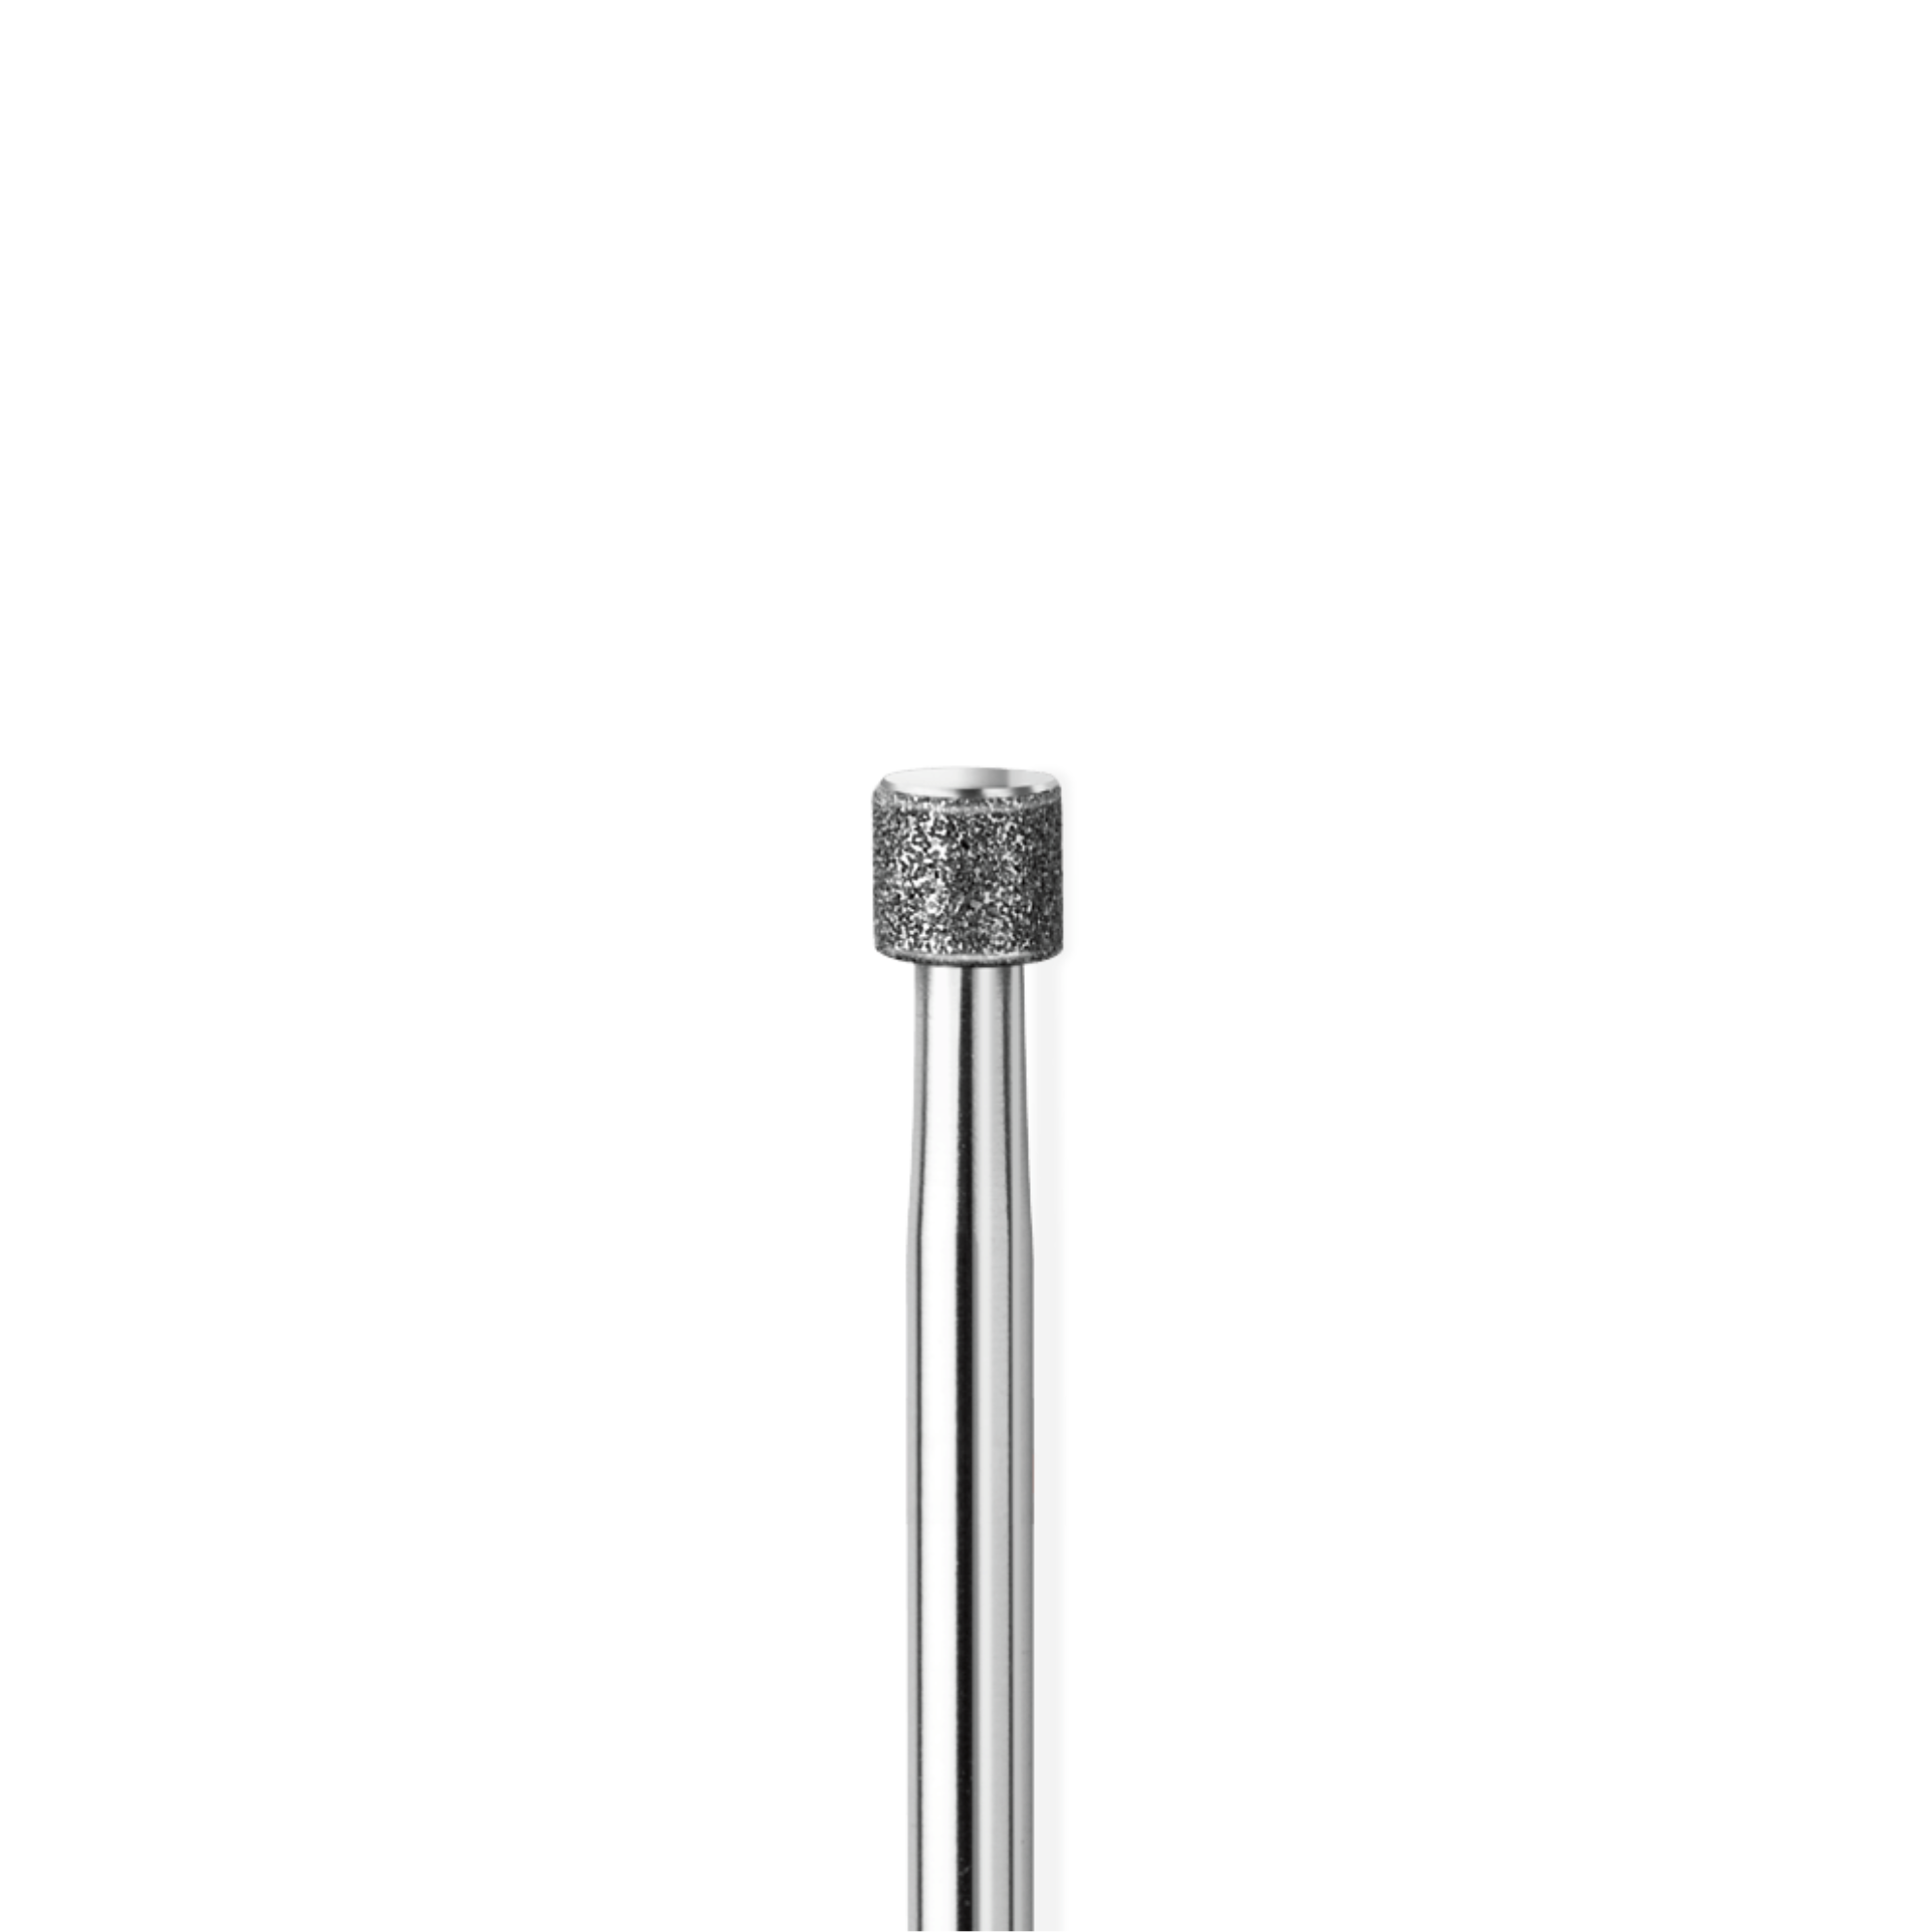 Fraise diamant - Abrasion des ongles - Grain moyen - 3,5 mm - 841S - SIDE Grip